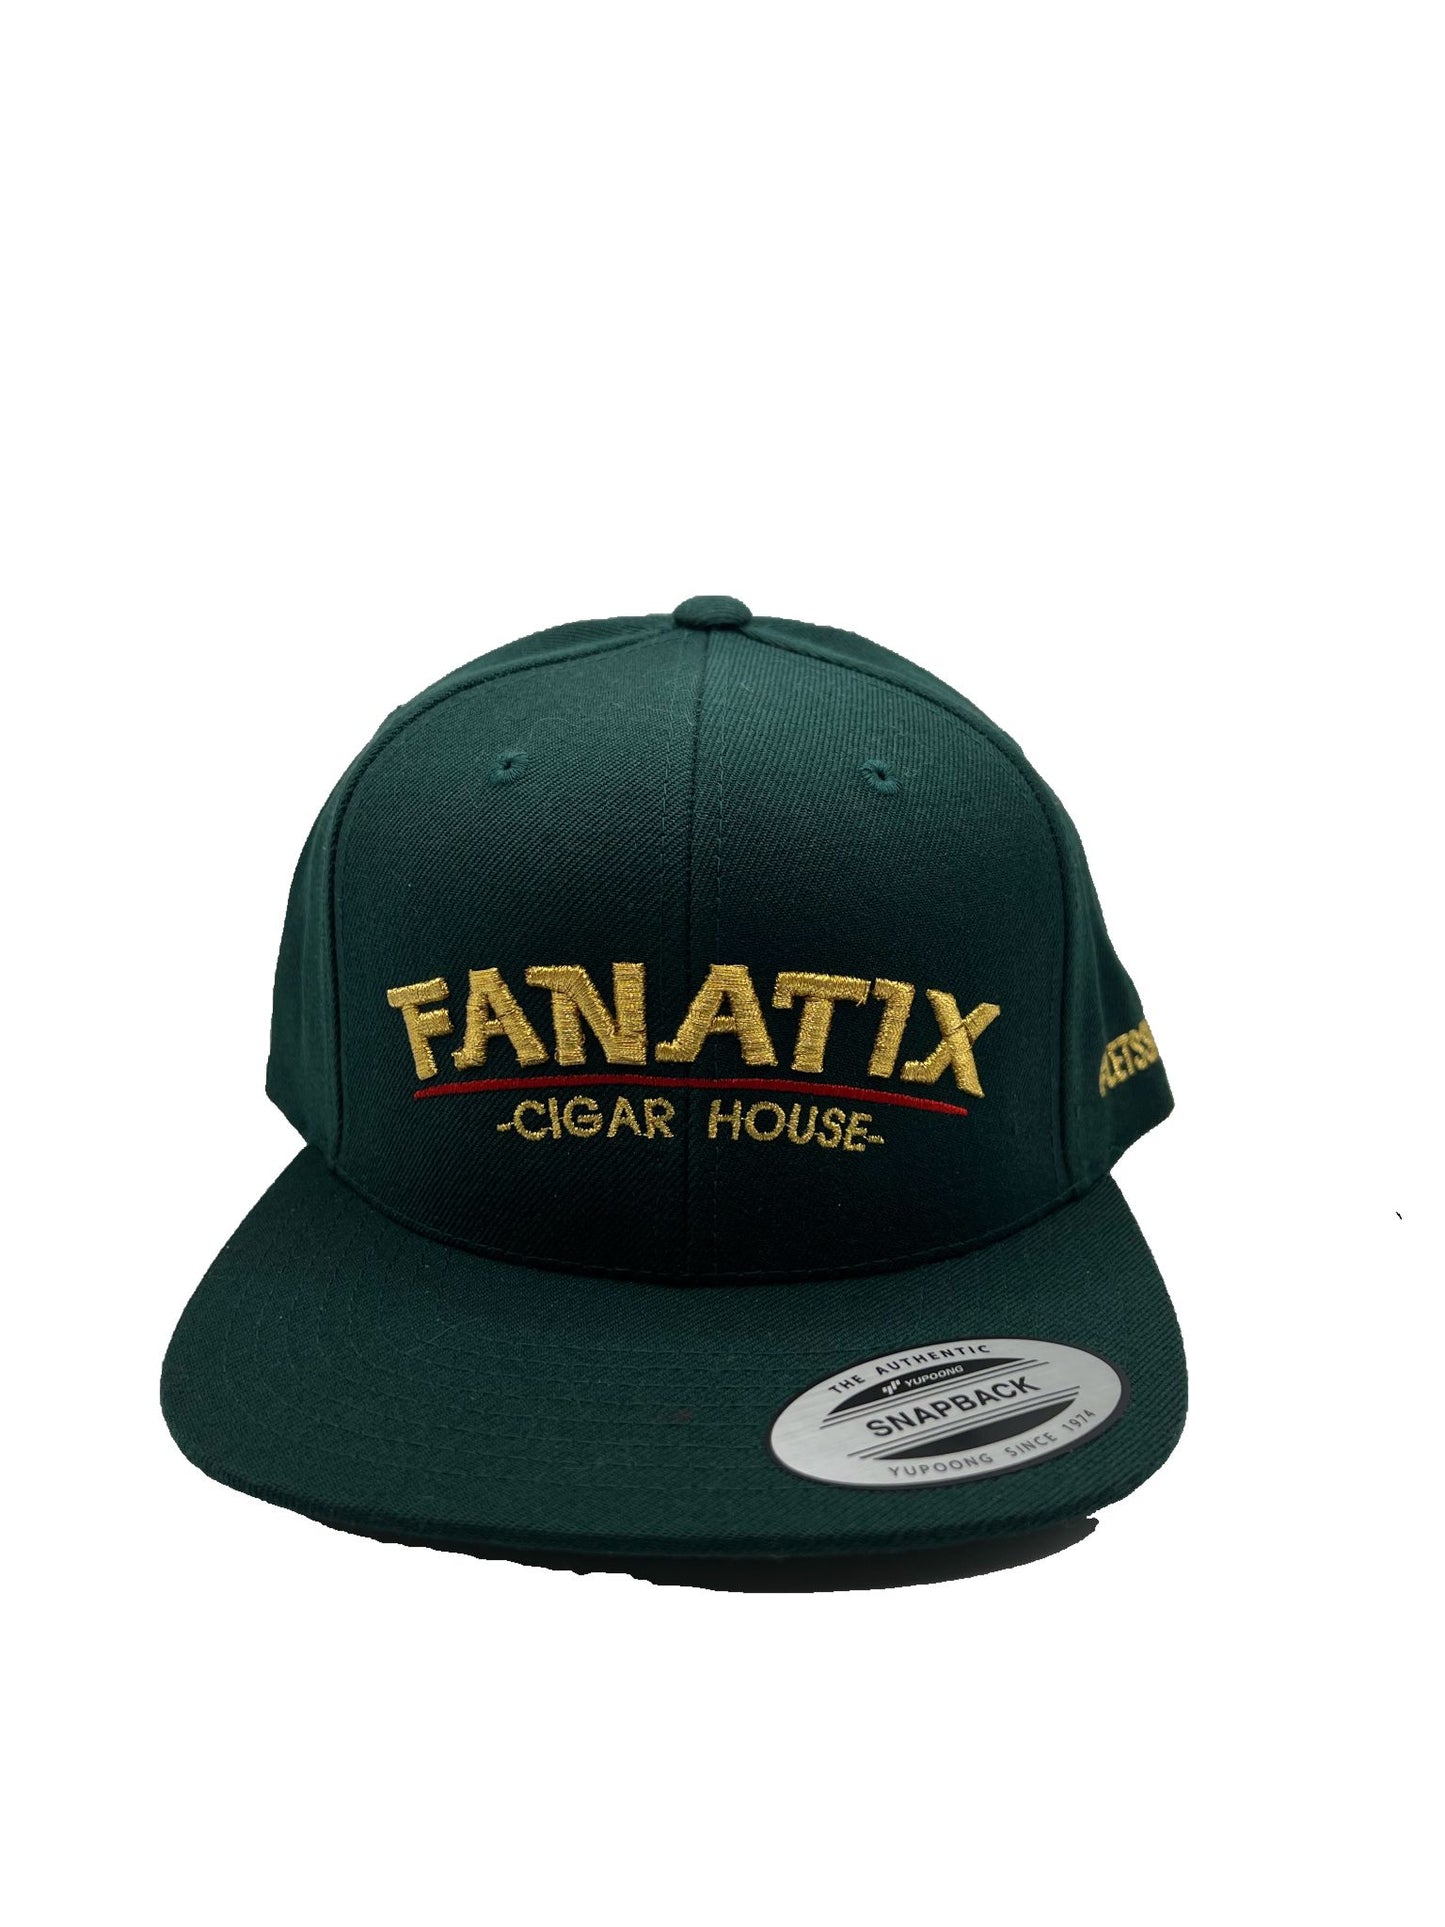 Fanatix Cigar House Hat - Green